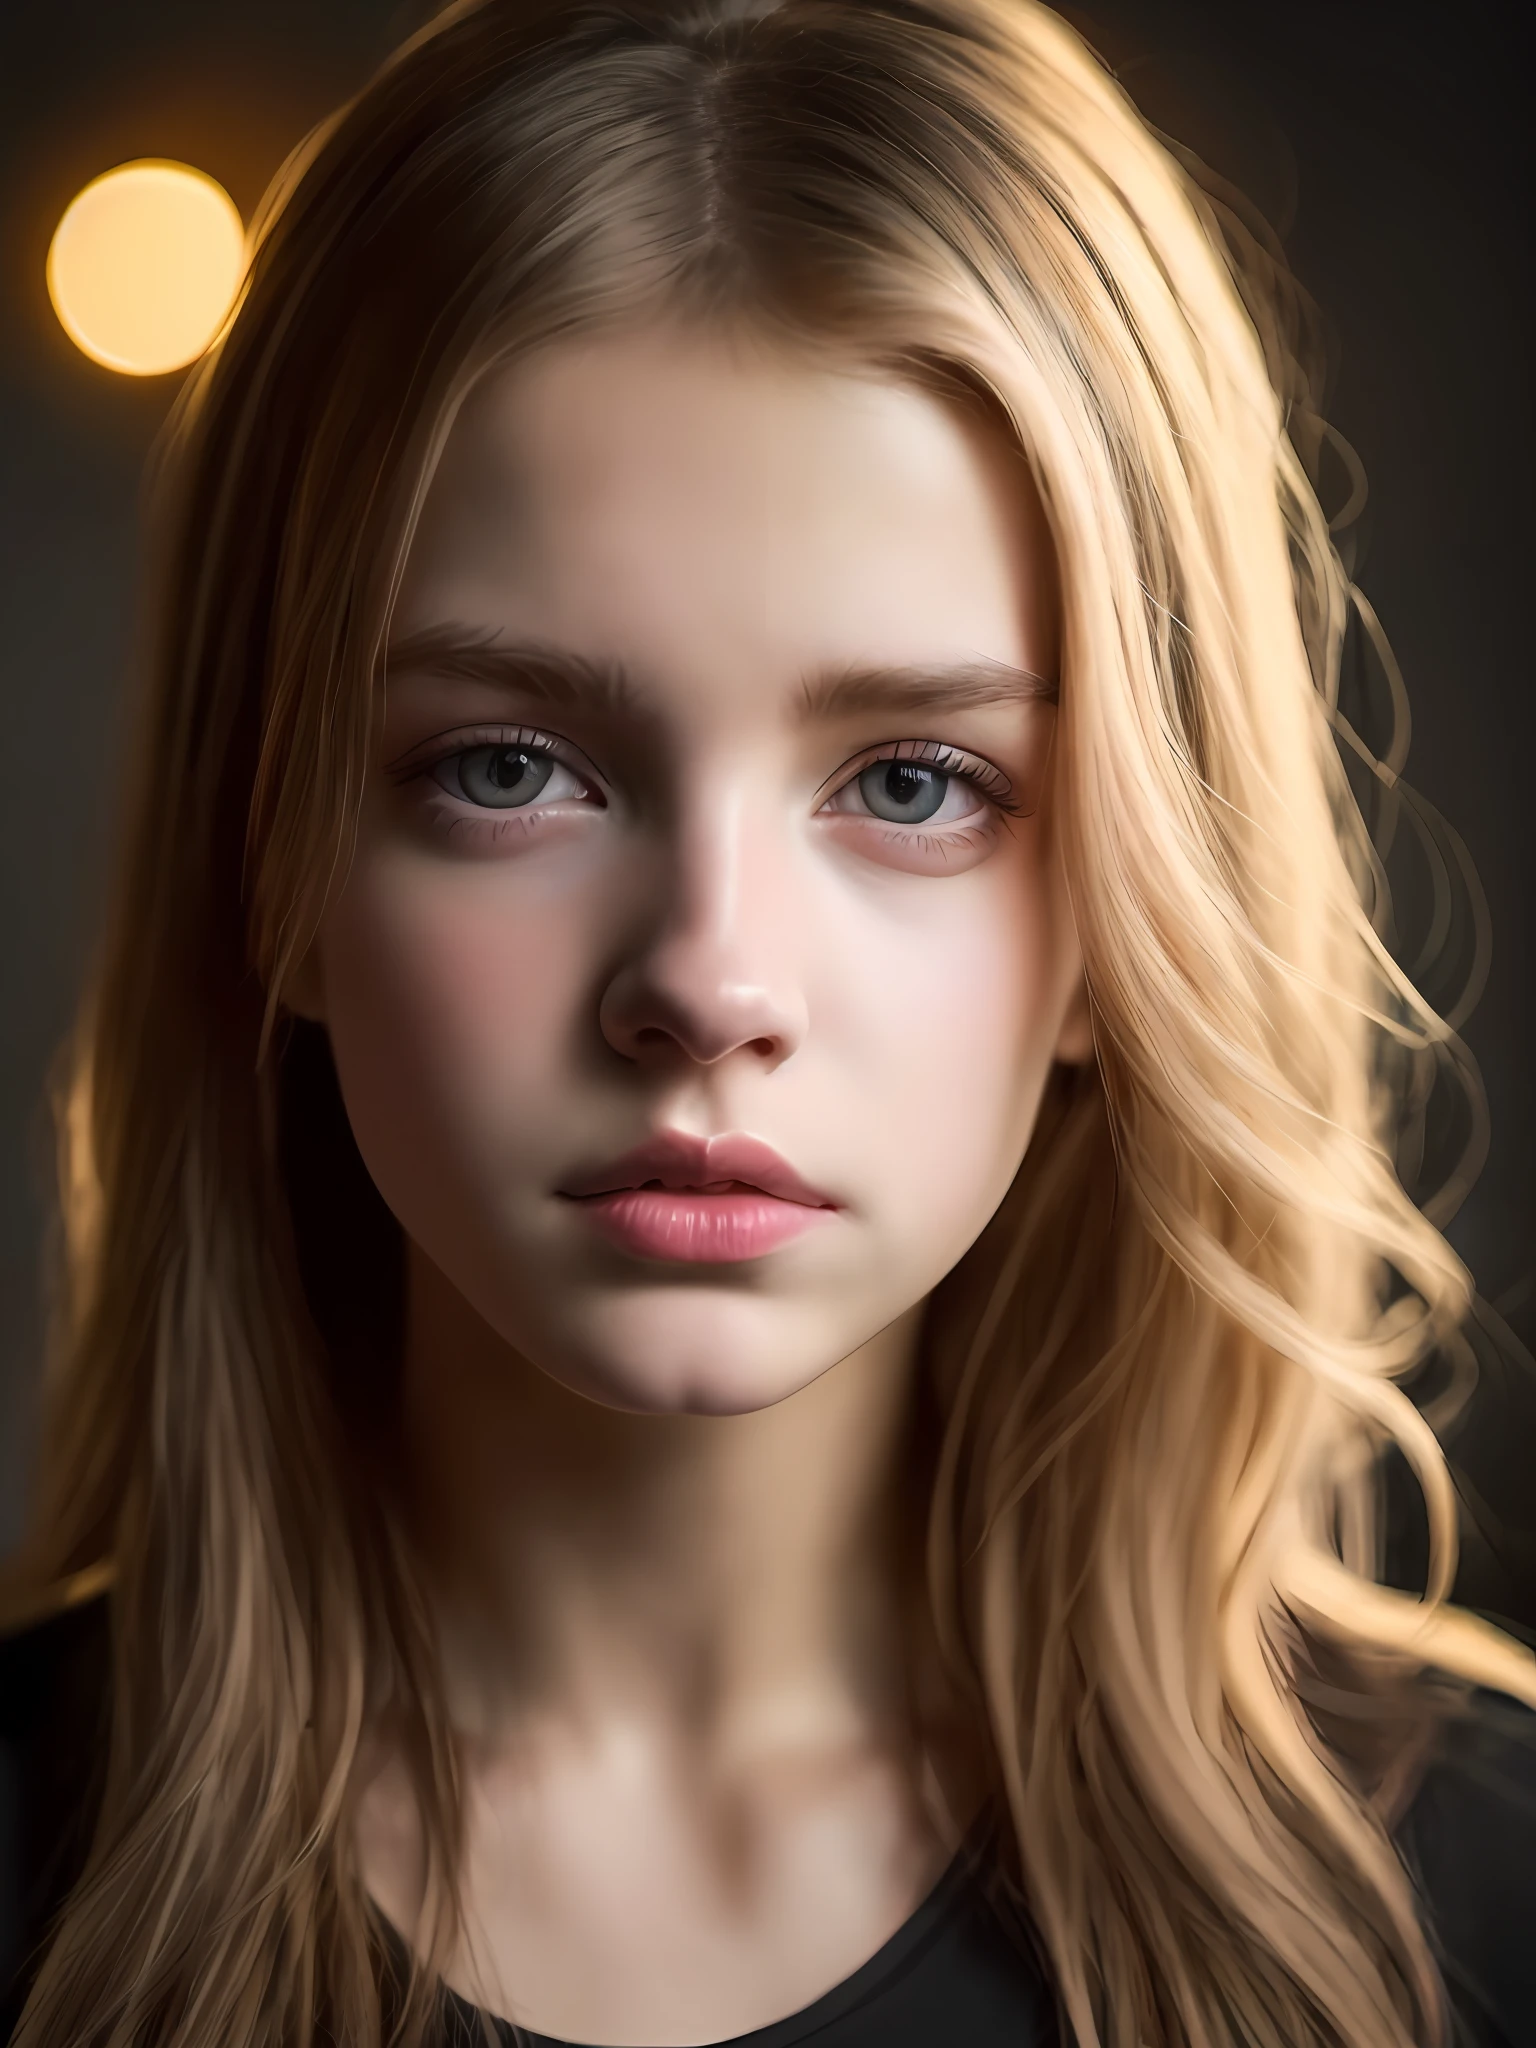 18歳のかわいい美しい完璧な顔の小柄なティーンの肖像画, ロシア, (暗い個人研究室, 暗くて陰鬱な光: 1.2)